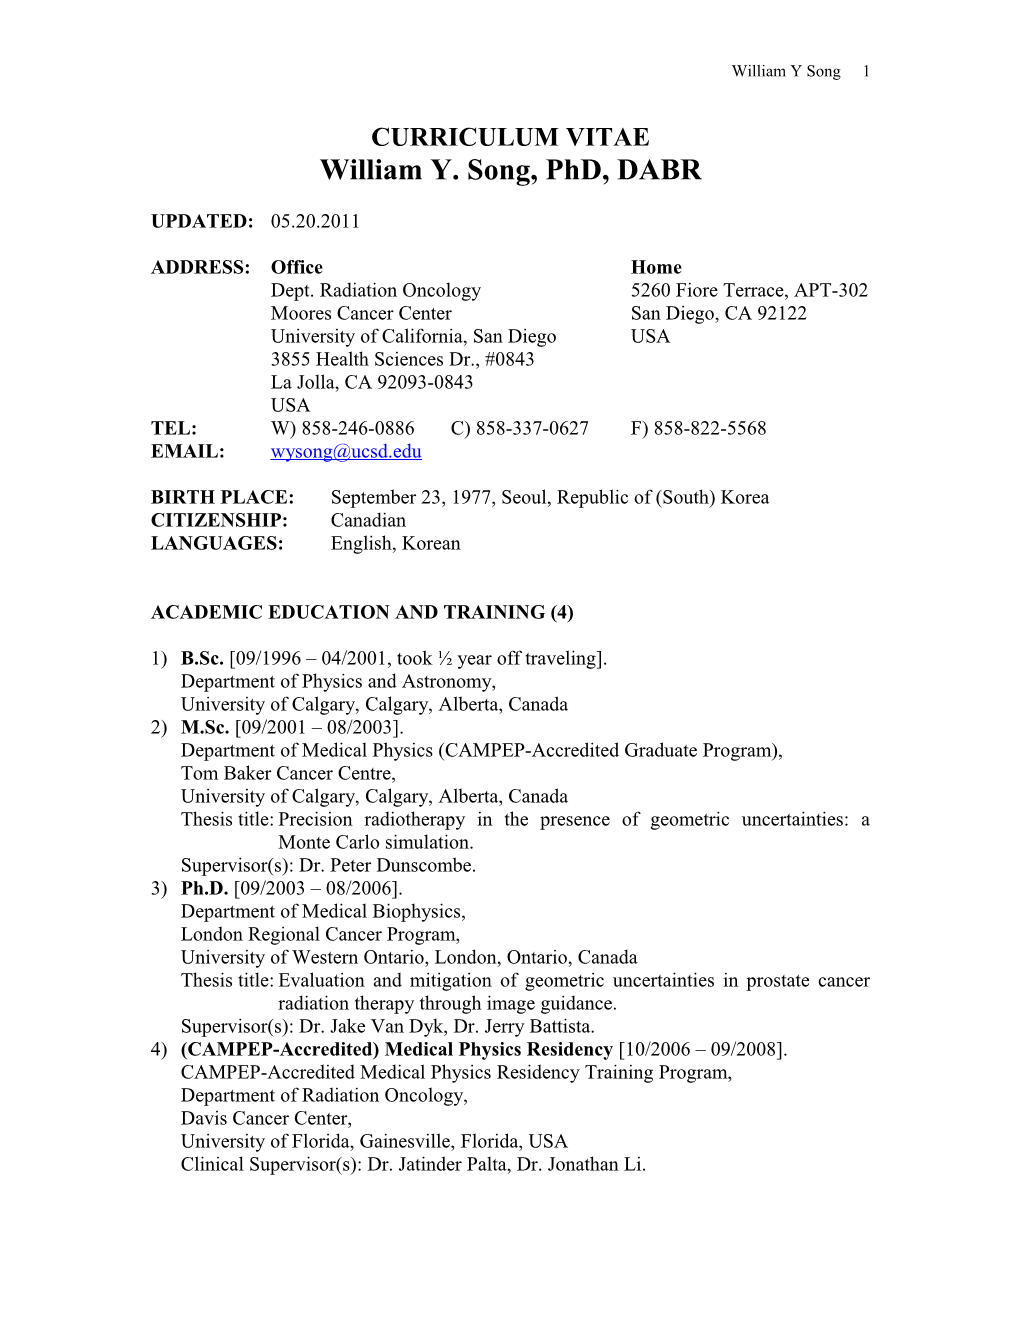 William Y. Song, Phd, DABR